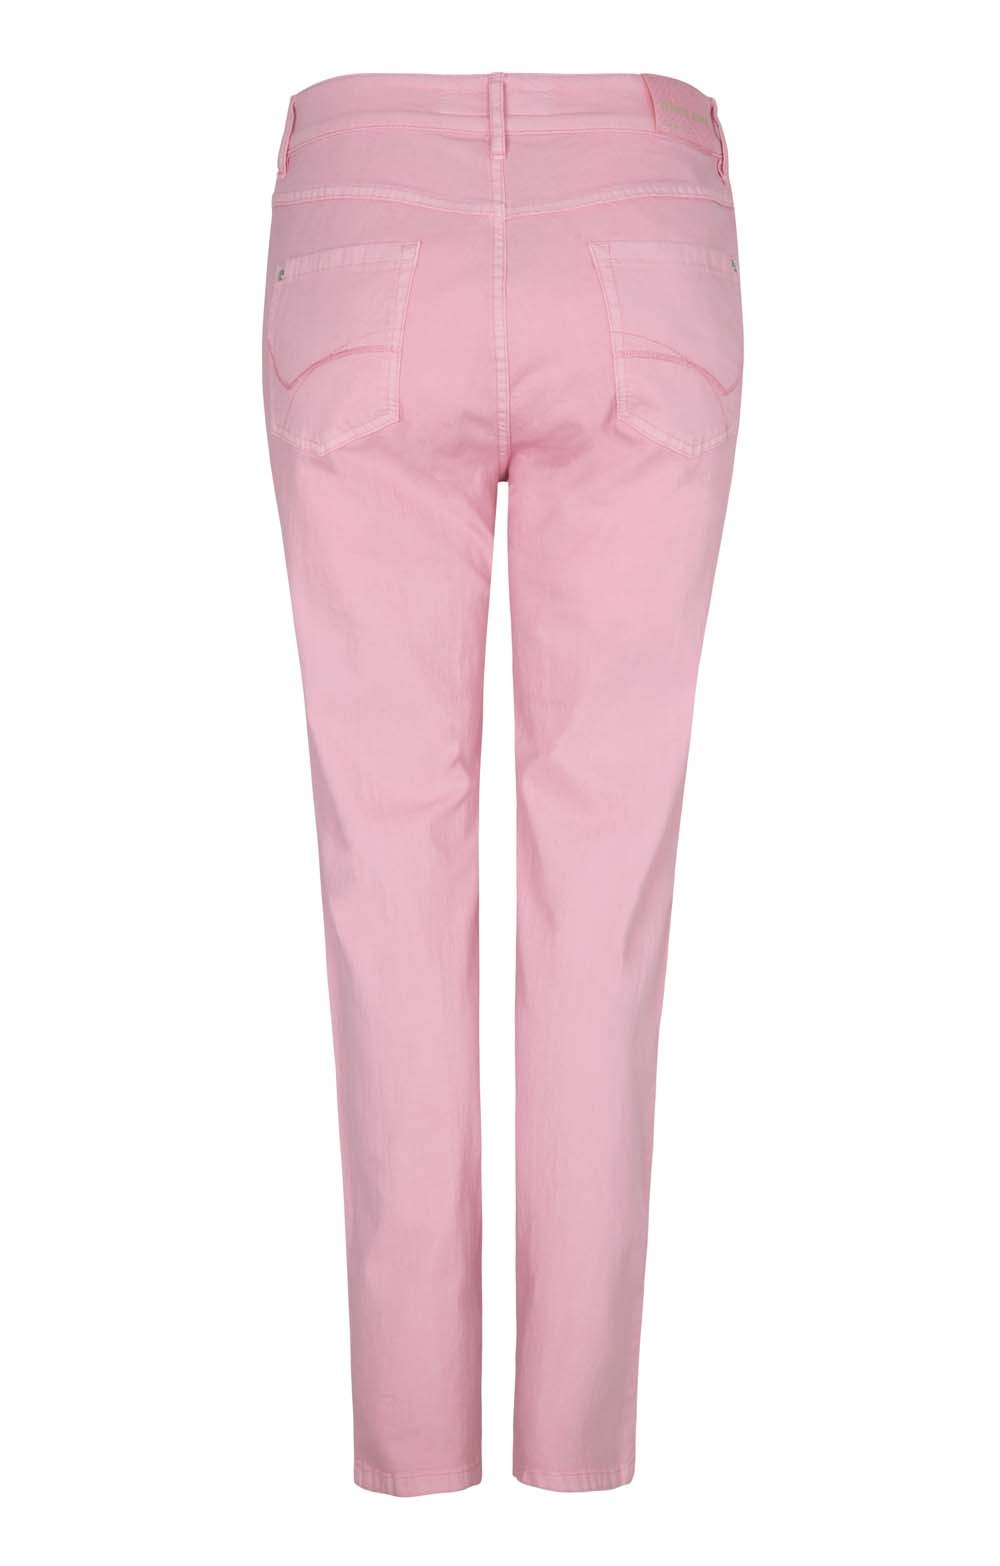 pink denim jeans ladies